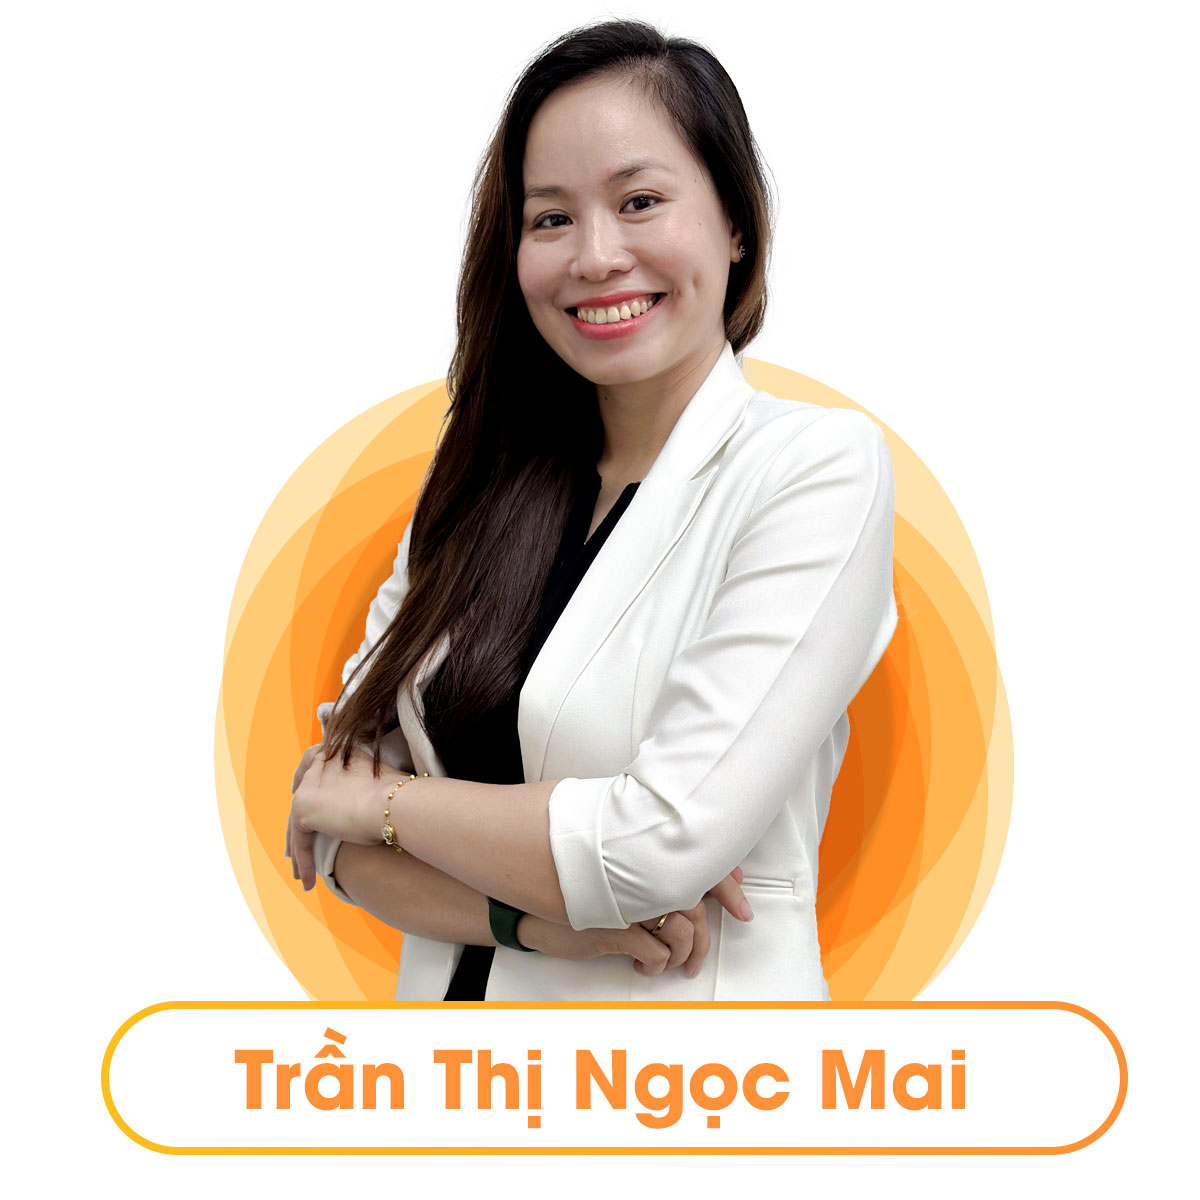 Ms. Mai Trần